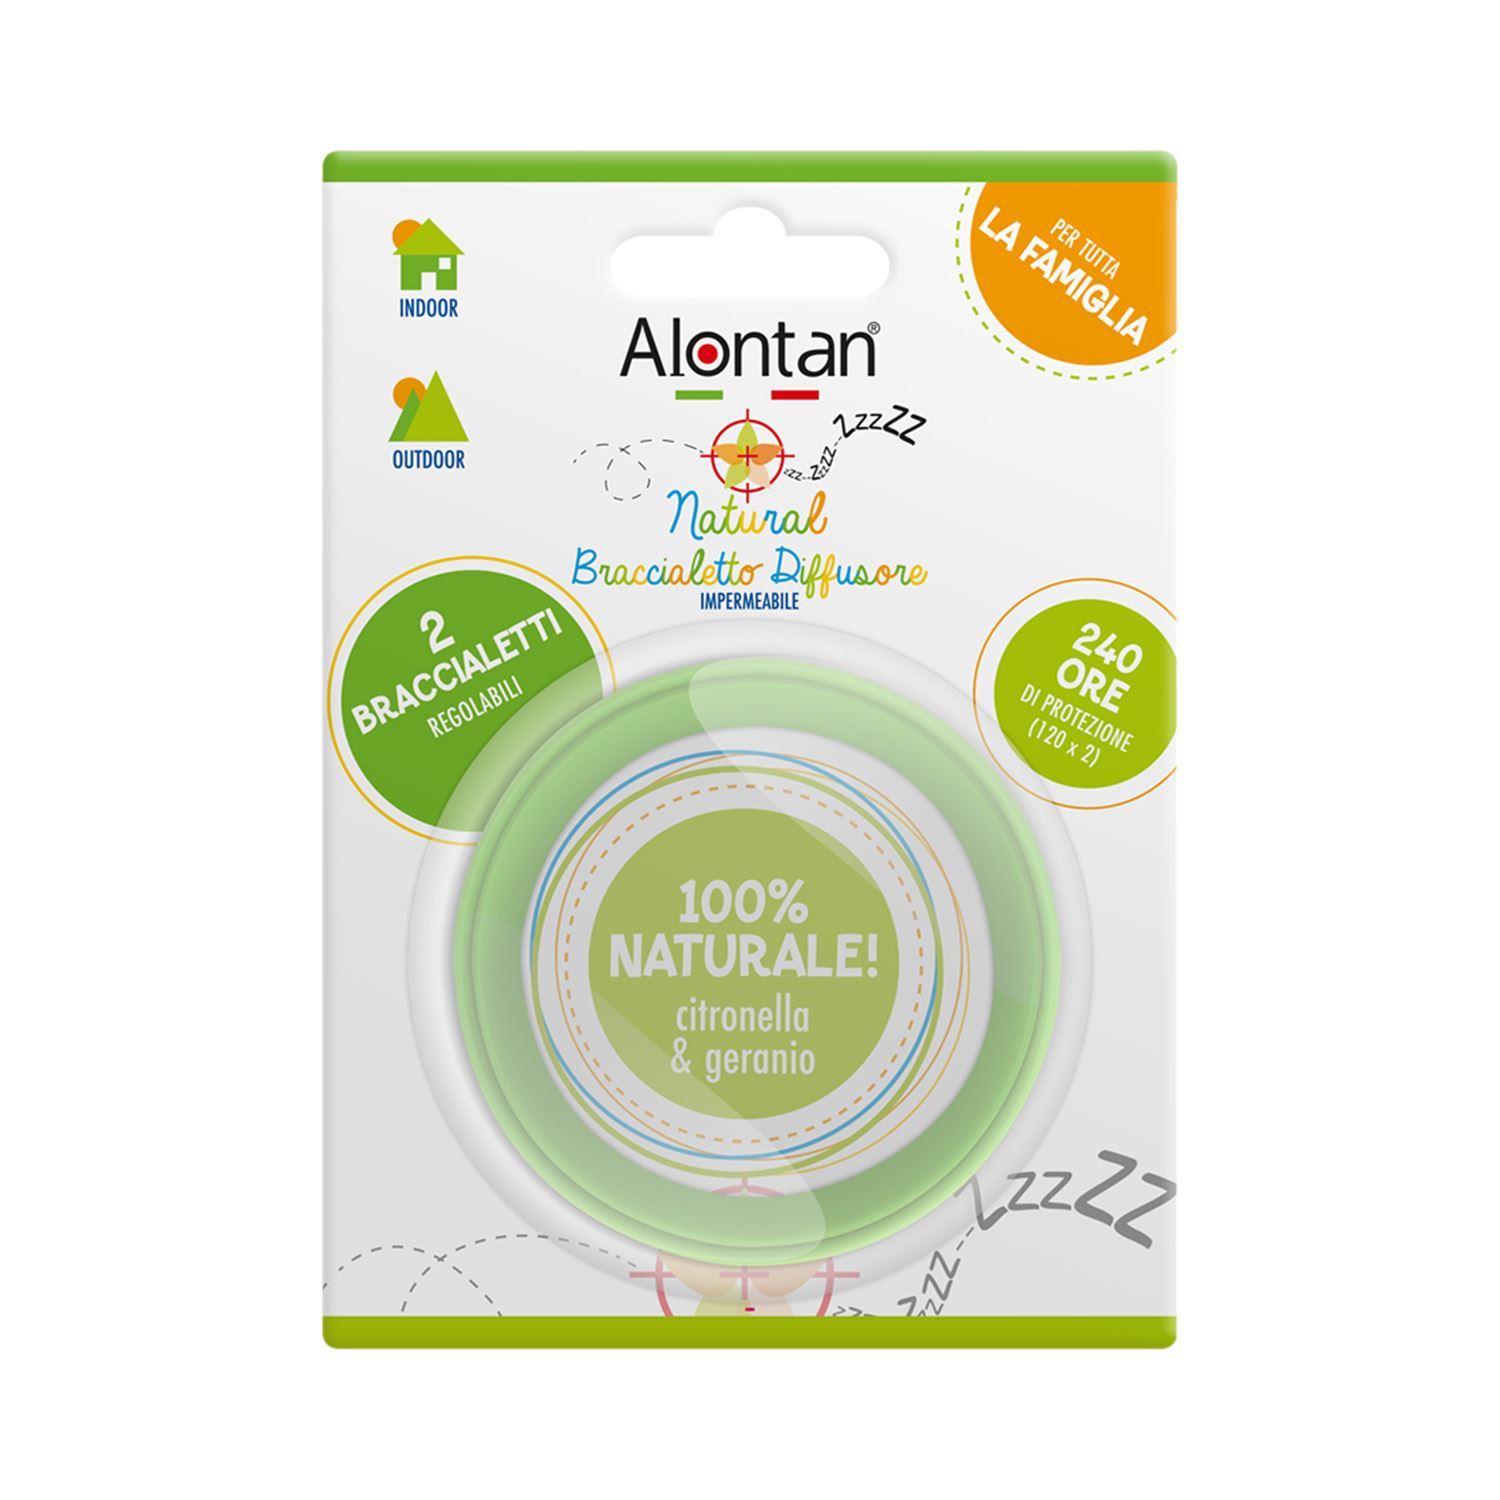 Alontan(R) Natural Braccialetto Diffusore Impermeabile 100% Naturale Citronella & Geranio 2 Pezzi